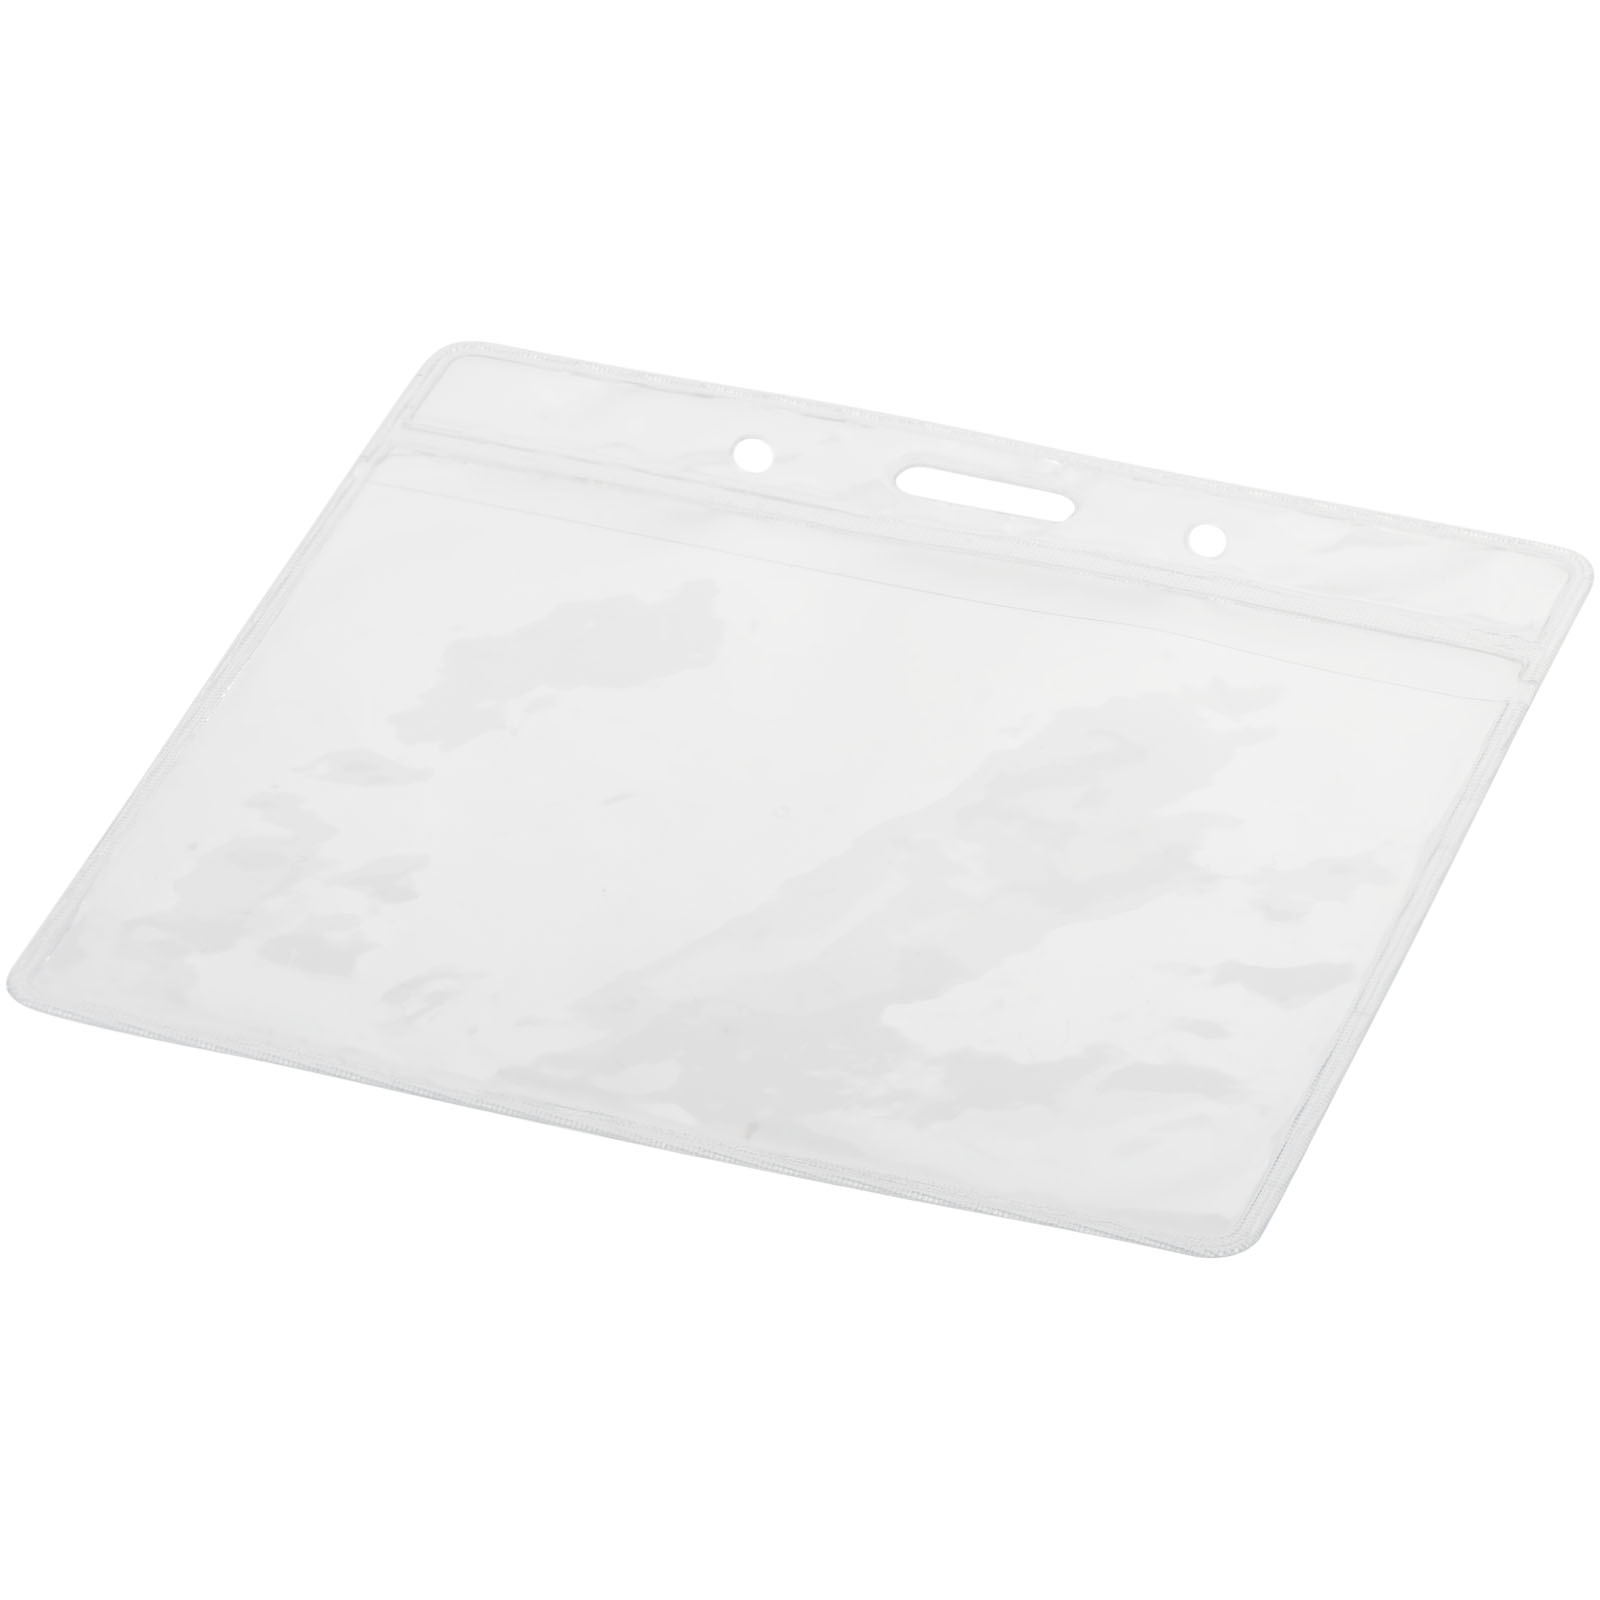 Badge Holders - Serge transparent badge holder